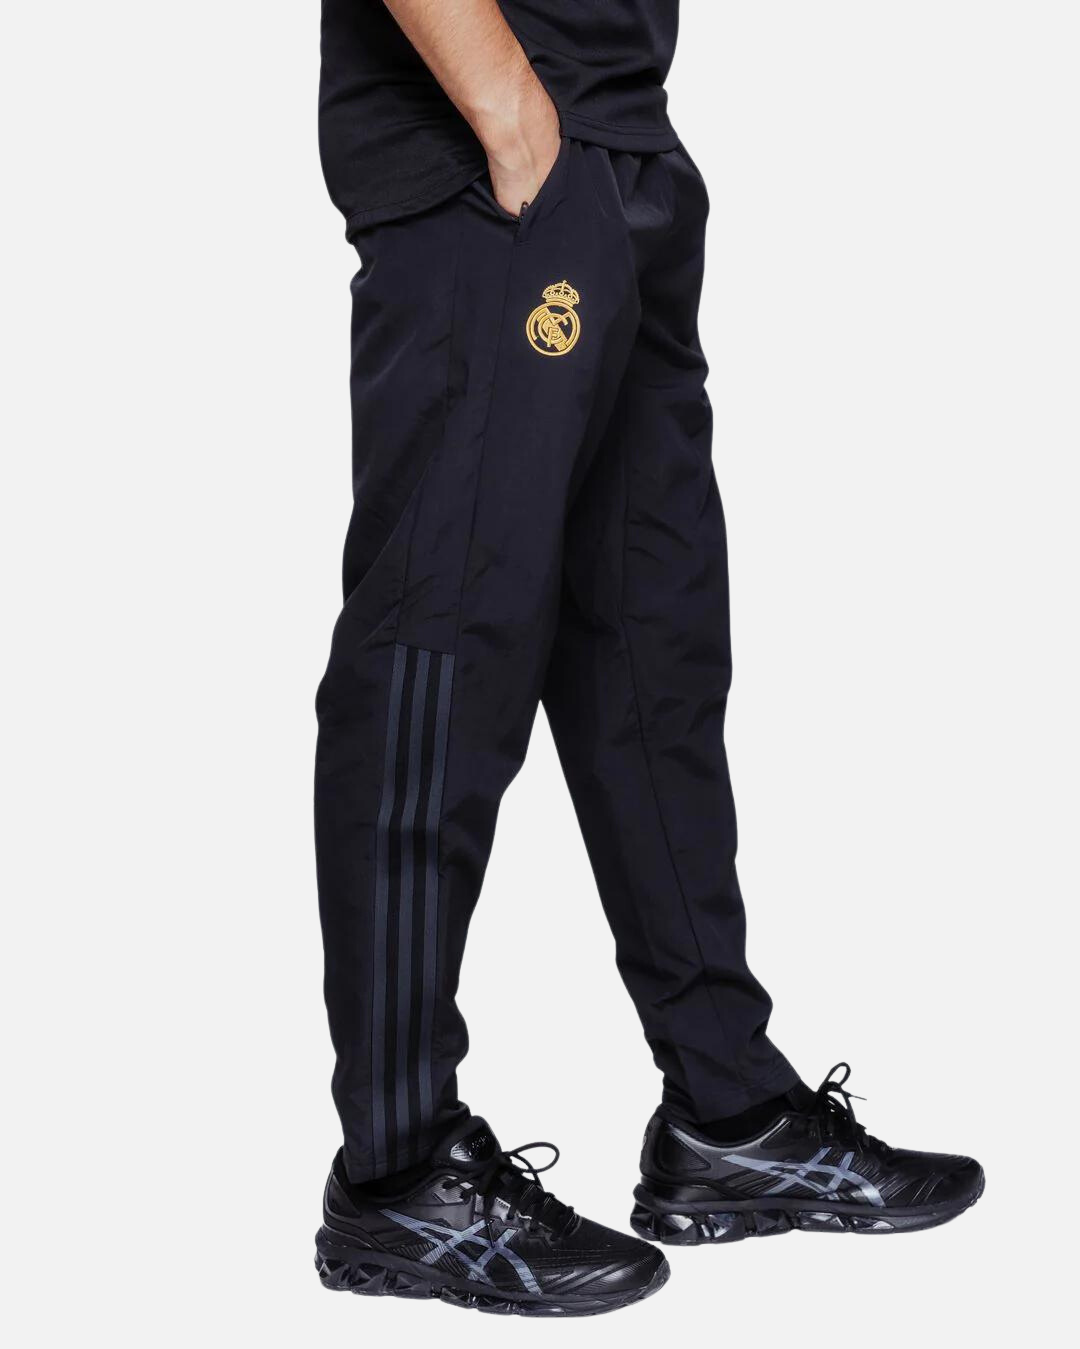 Real Madrid Track Pants Black Gold Footkorner